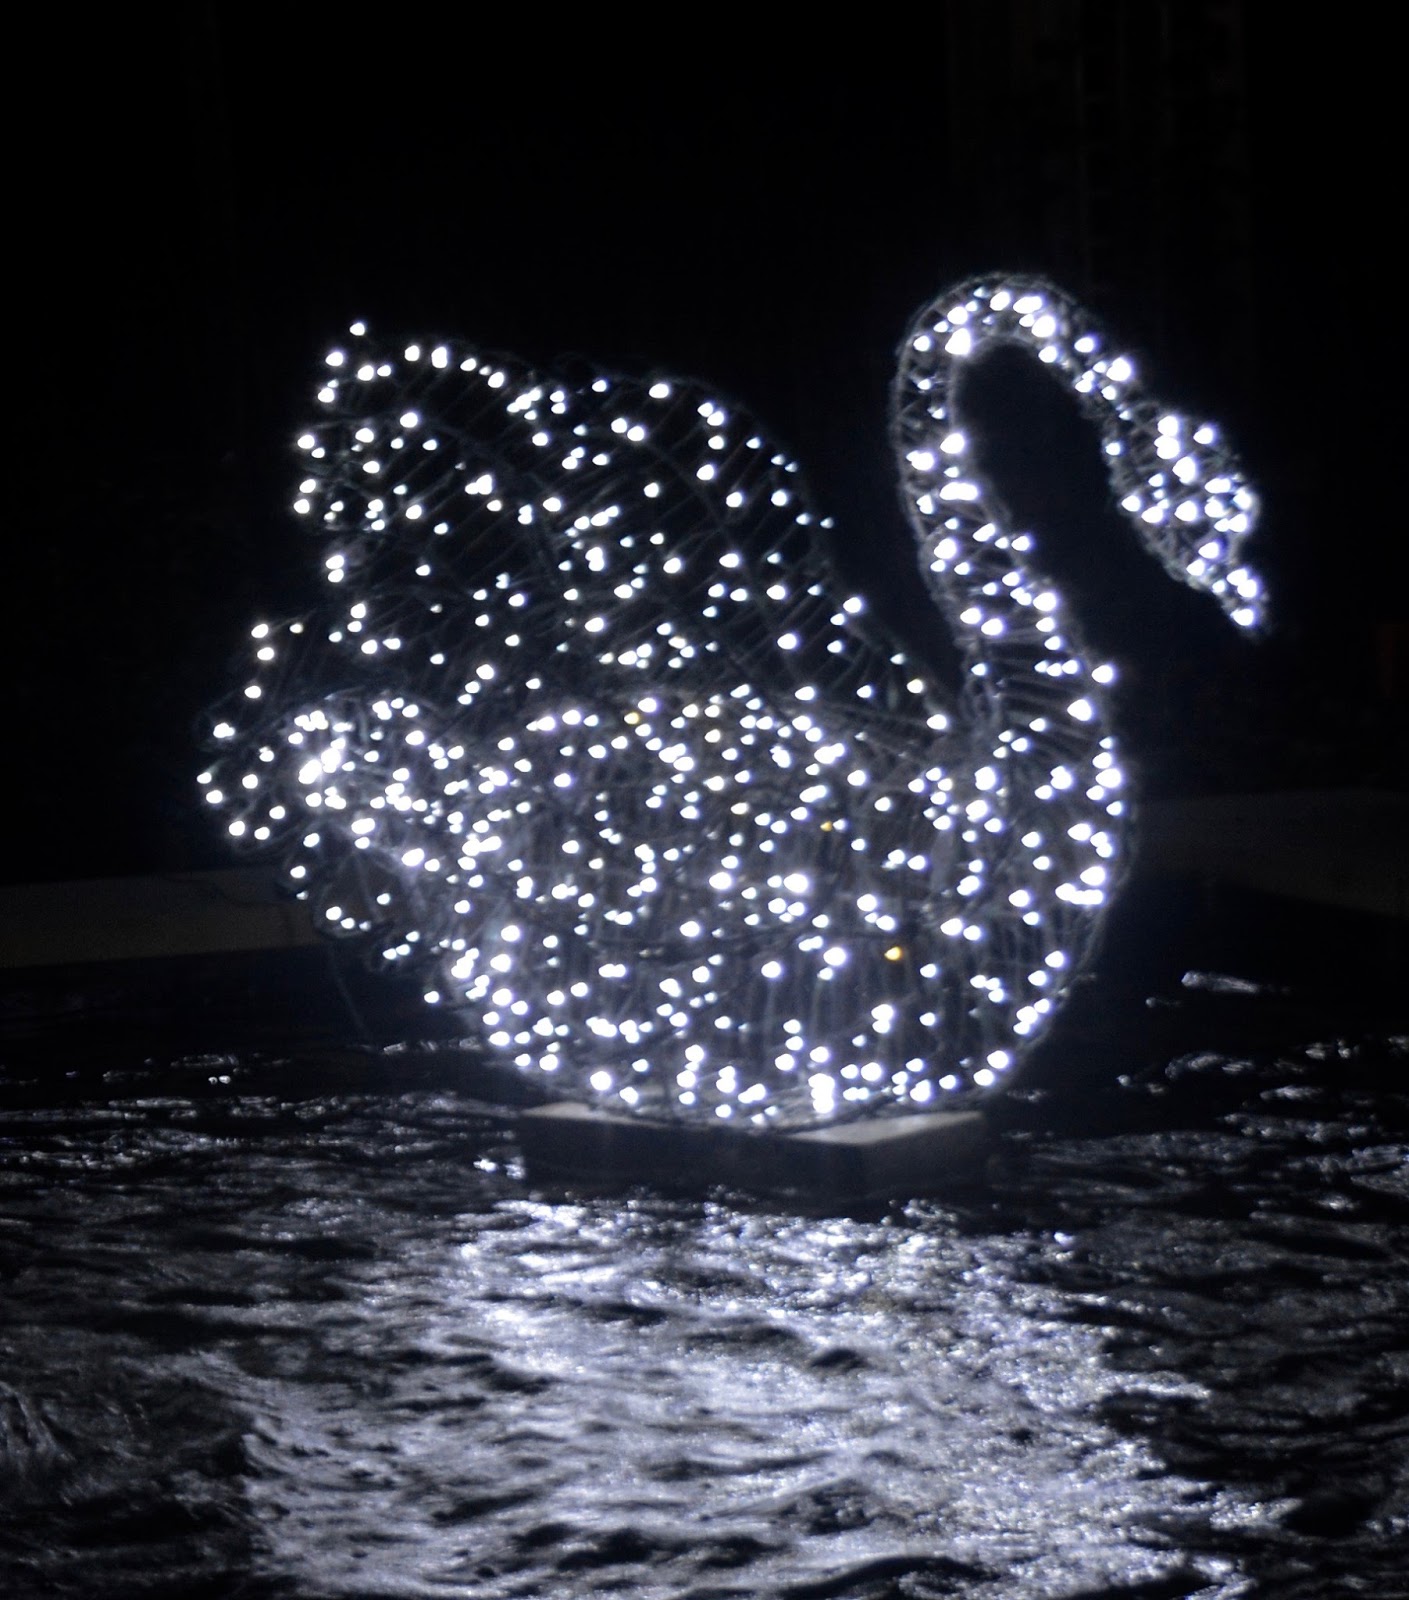 Winter Wonderland Christmas Light Show | A Wynyard Hall Garden Event - A Review - illuminated swan